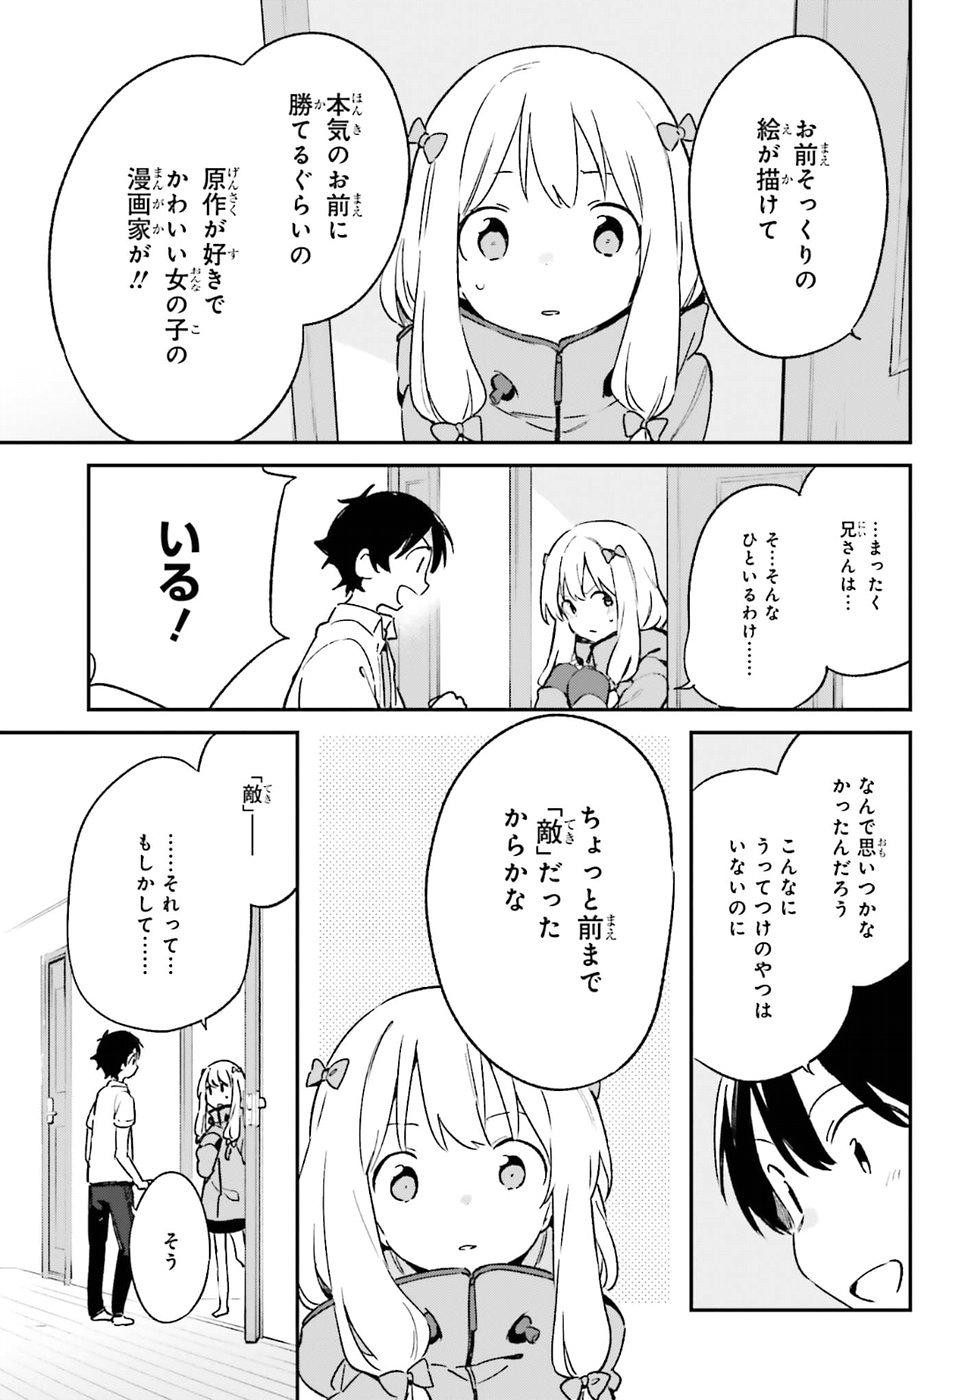 Ero Manga Sensei - Chapter 47 - Page 22